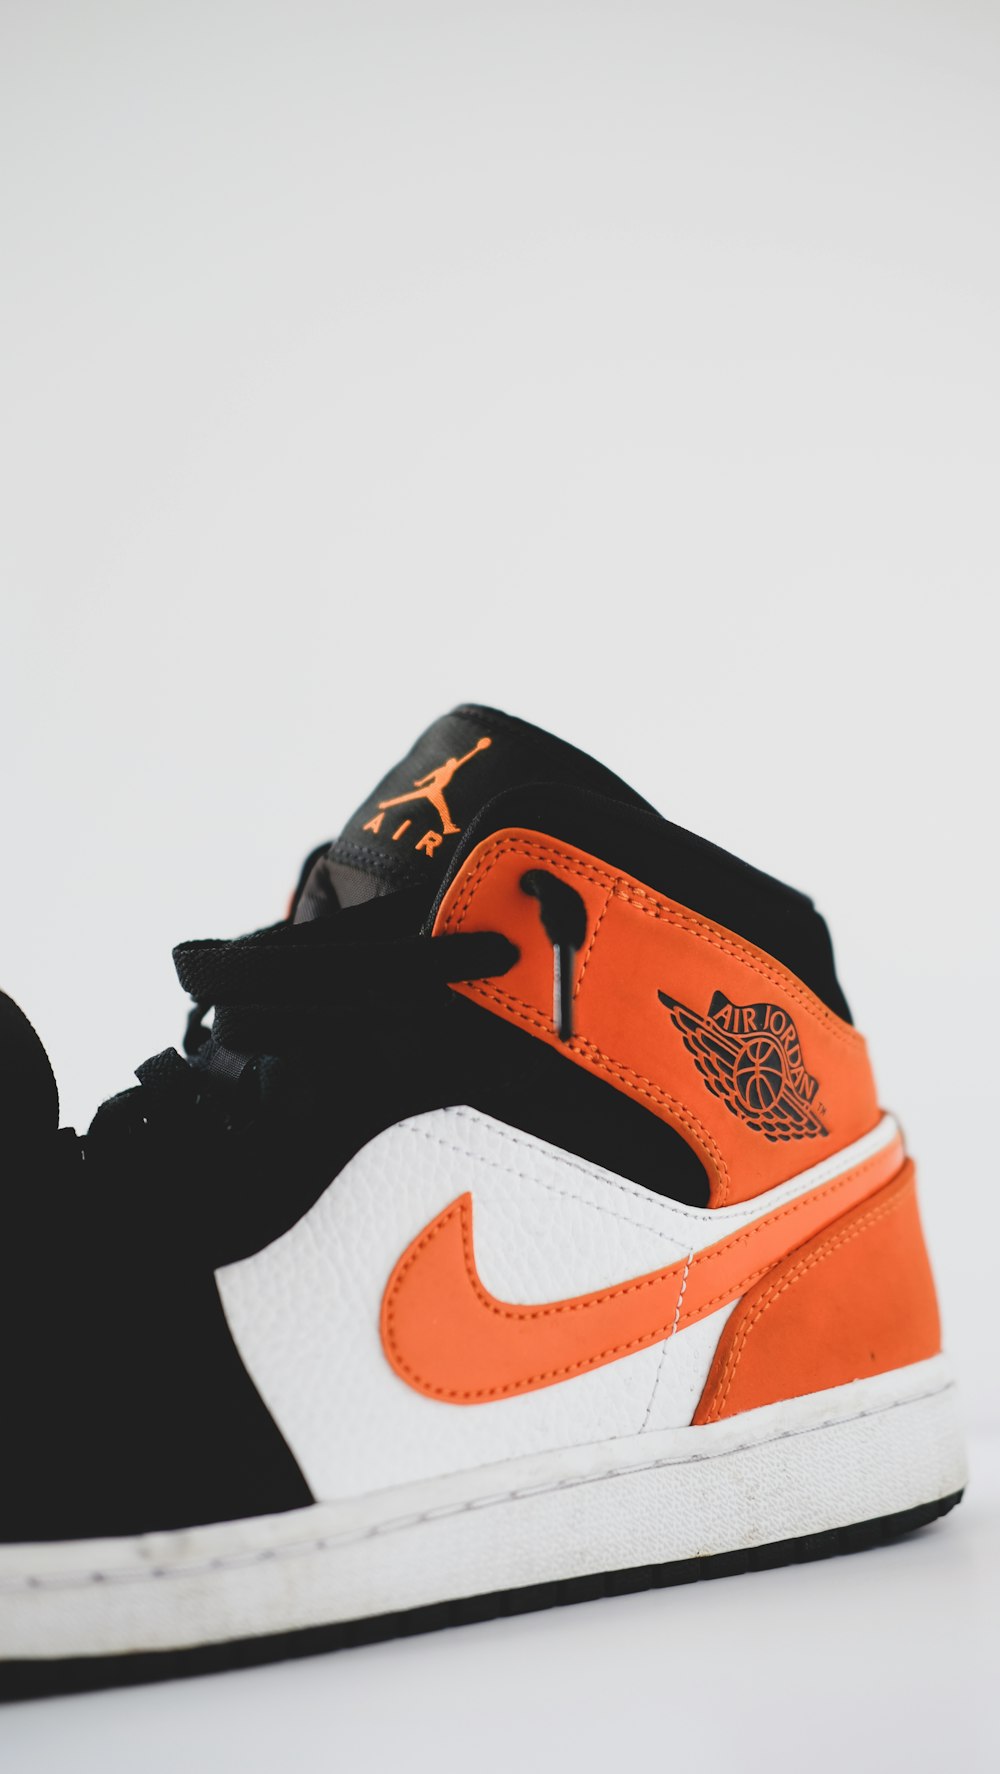 black white and orange nike basketball shoes photo – Free Image on Unsplash